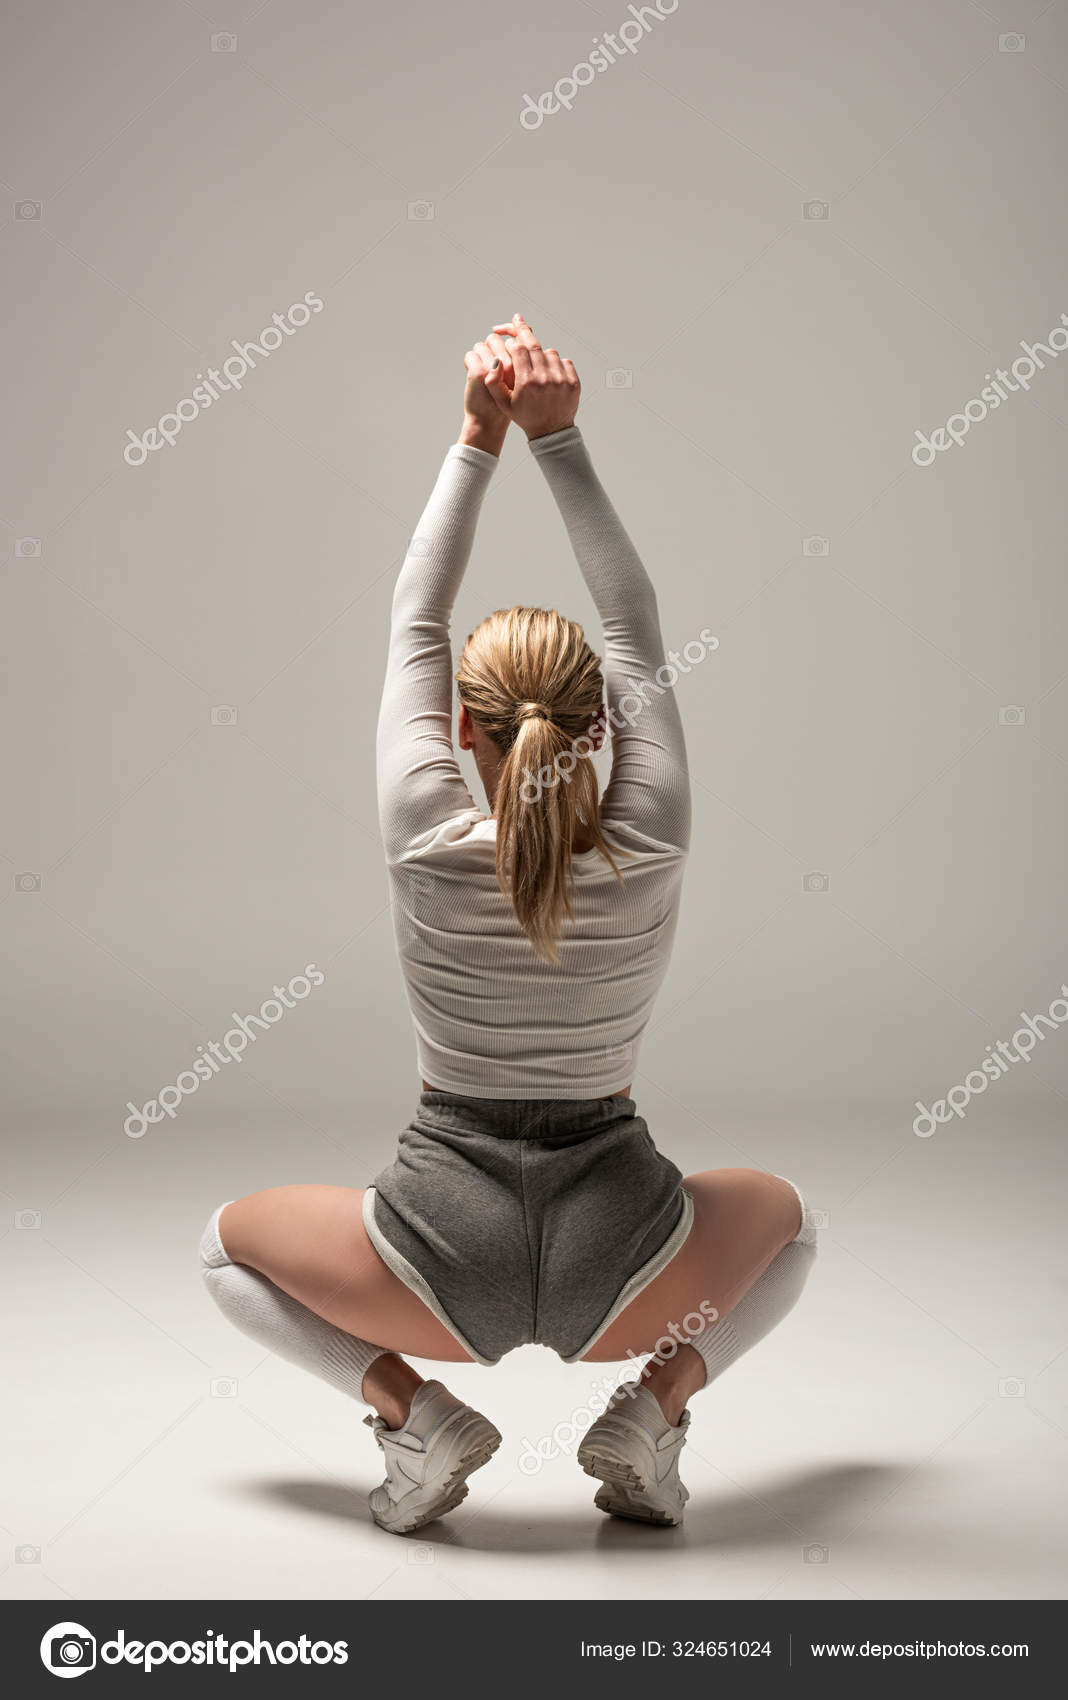 Twerk yoga teacher Kim Zolciak’s